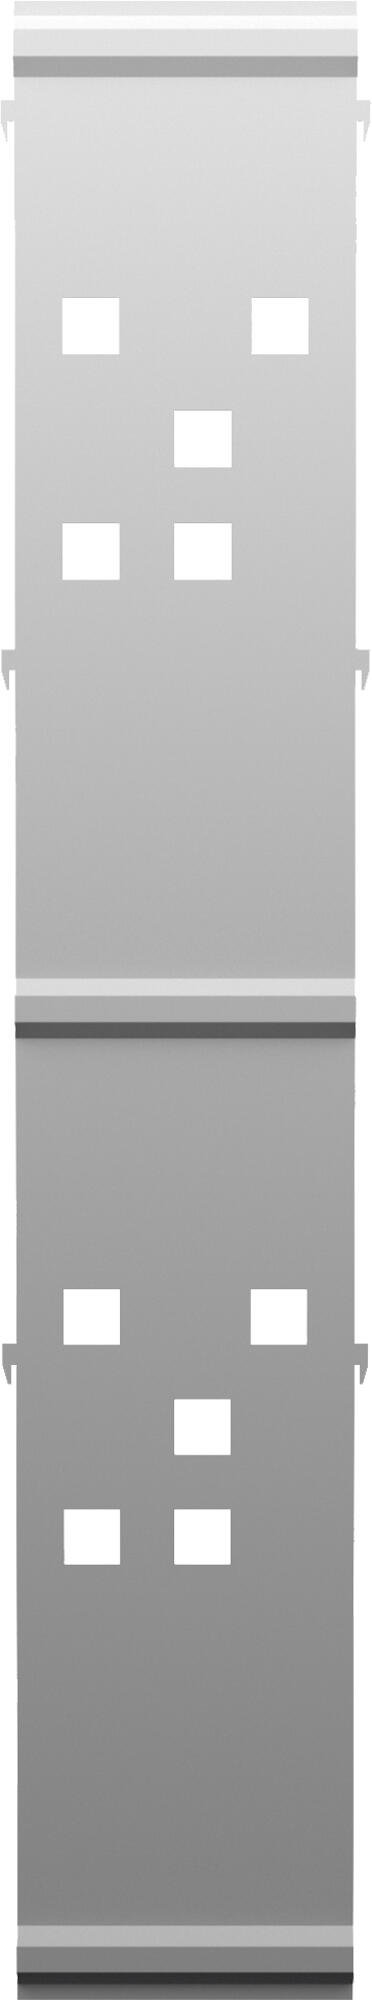 Panel remate valla acero galvanizado franja cuadros blanco 144x24,5 cm